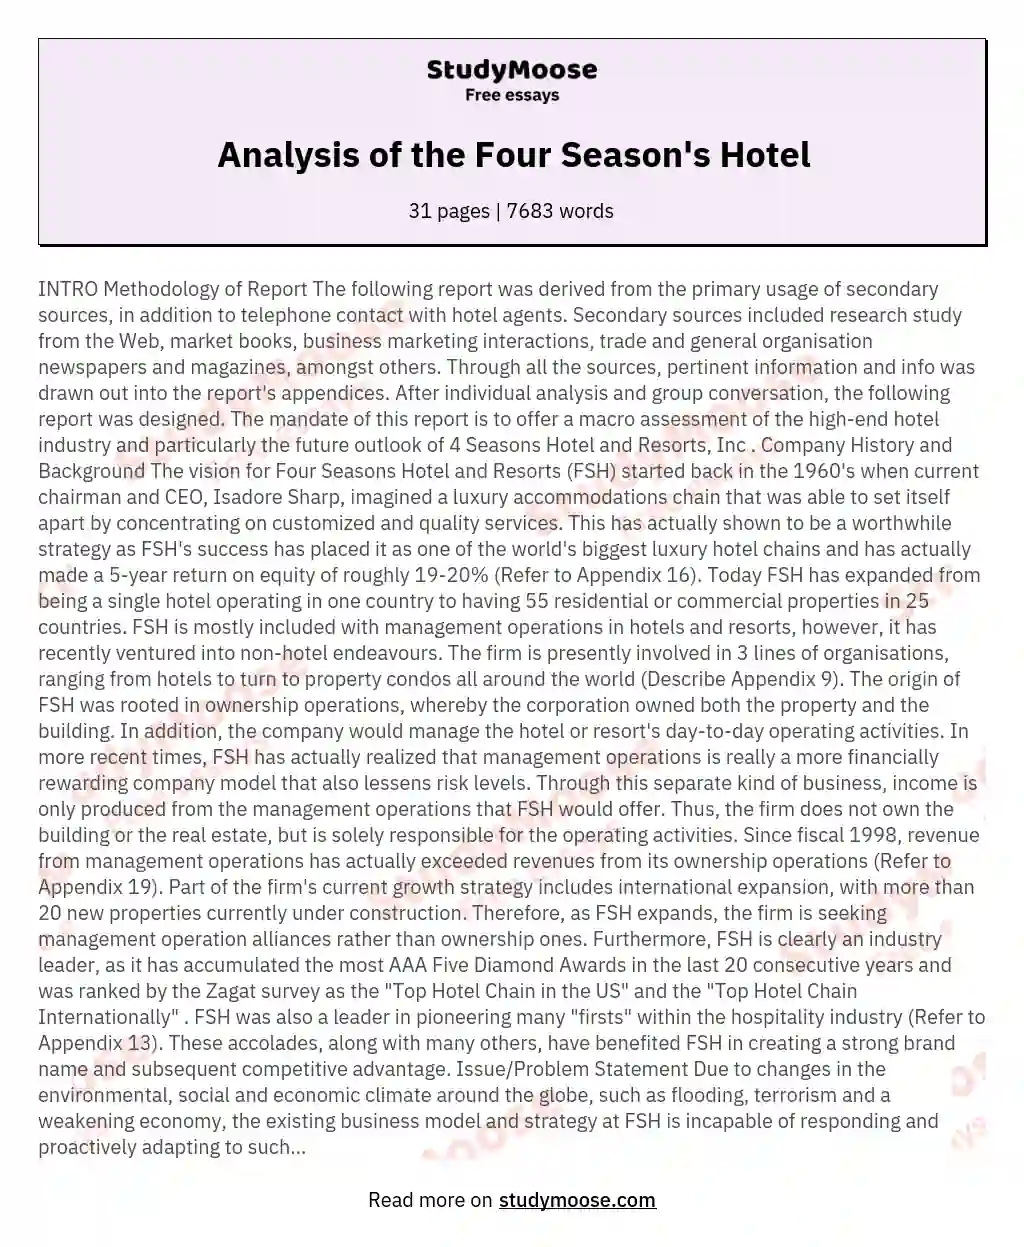 Analysis of the Four Season's Hotel